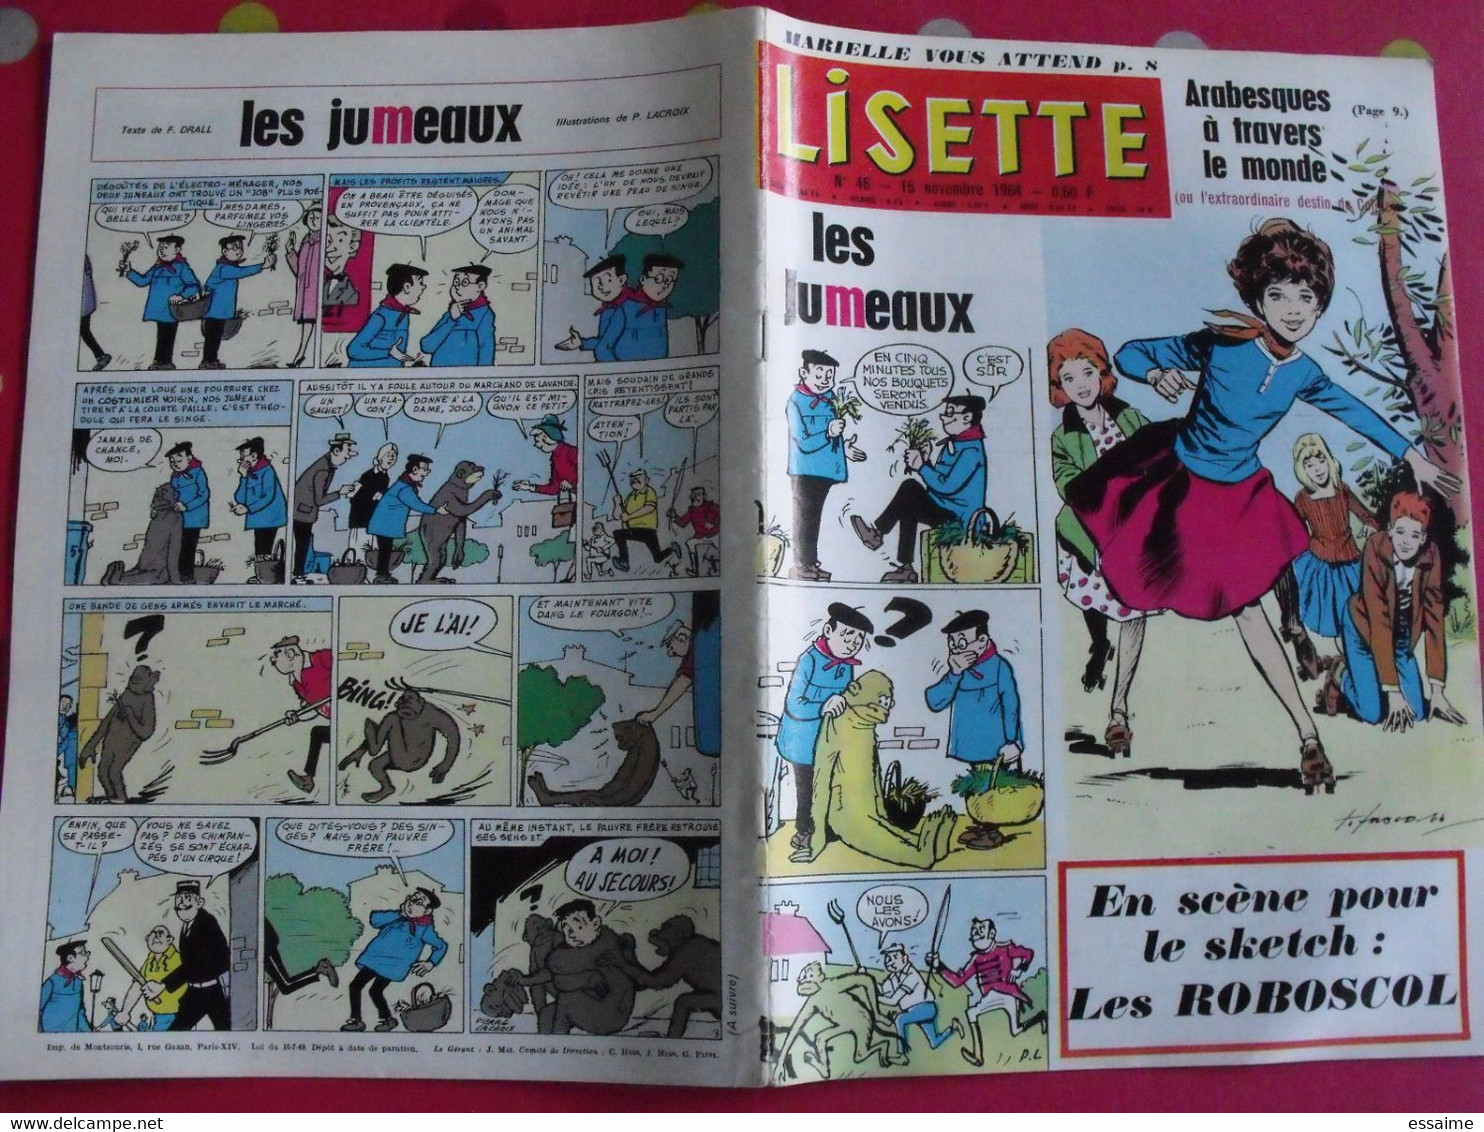 Lisette. 26 n° de 1962, 1963, 1964. lacroix lay tiky fusco francey marcello. à redécouvrir G.H.